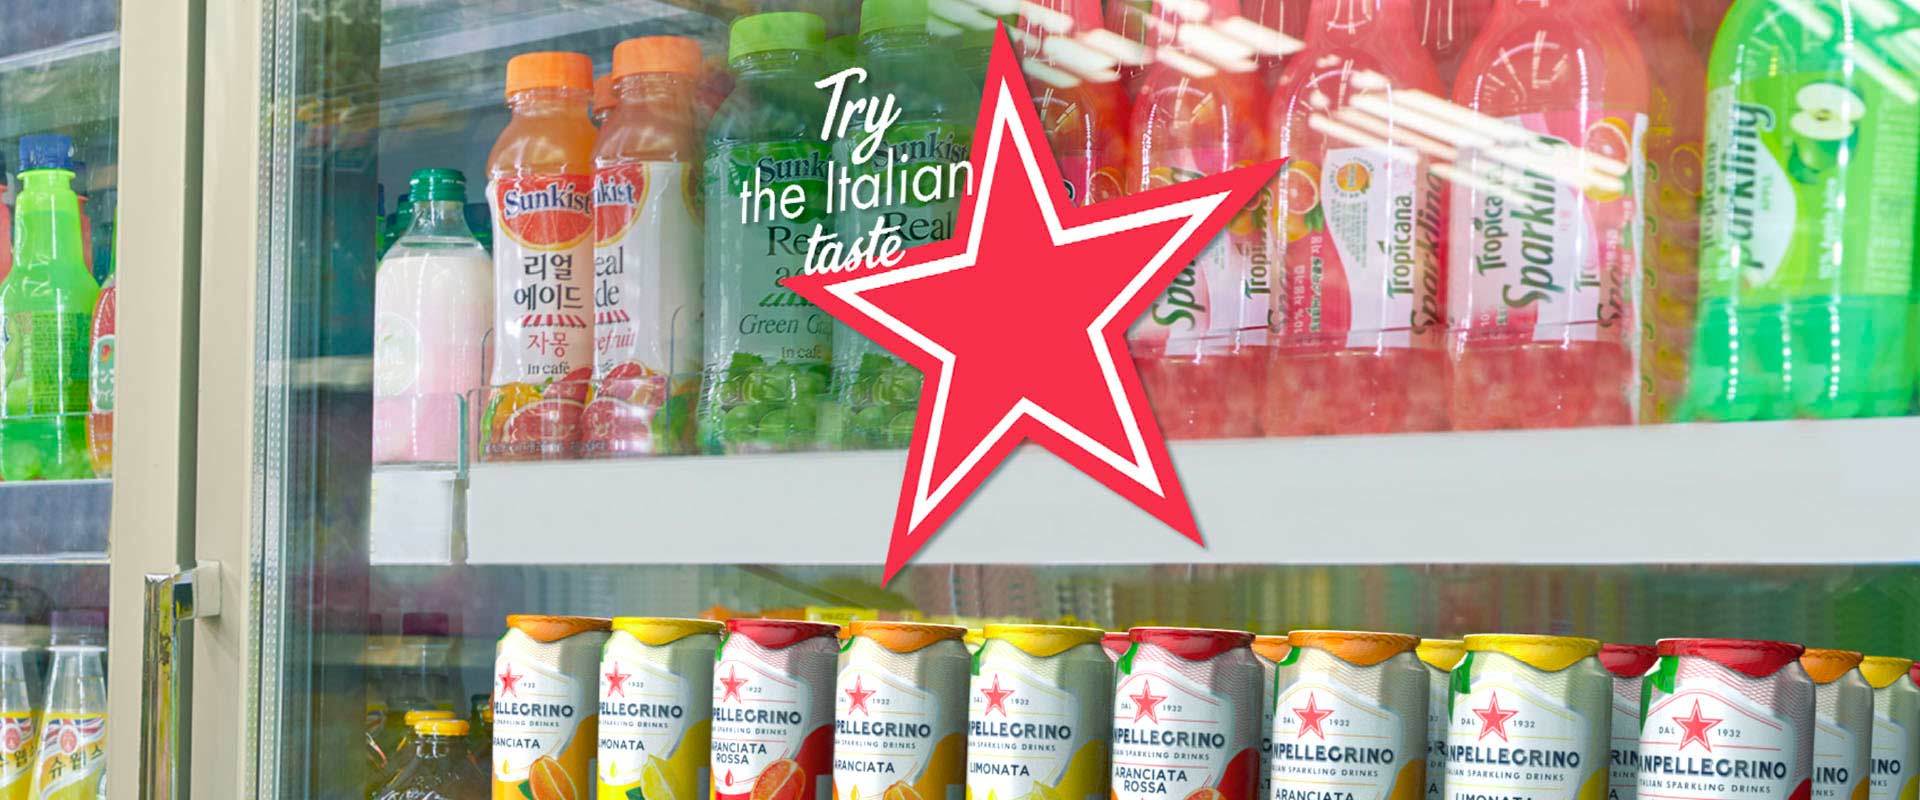 Sanpellegrino beverages window sticker for fridge